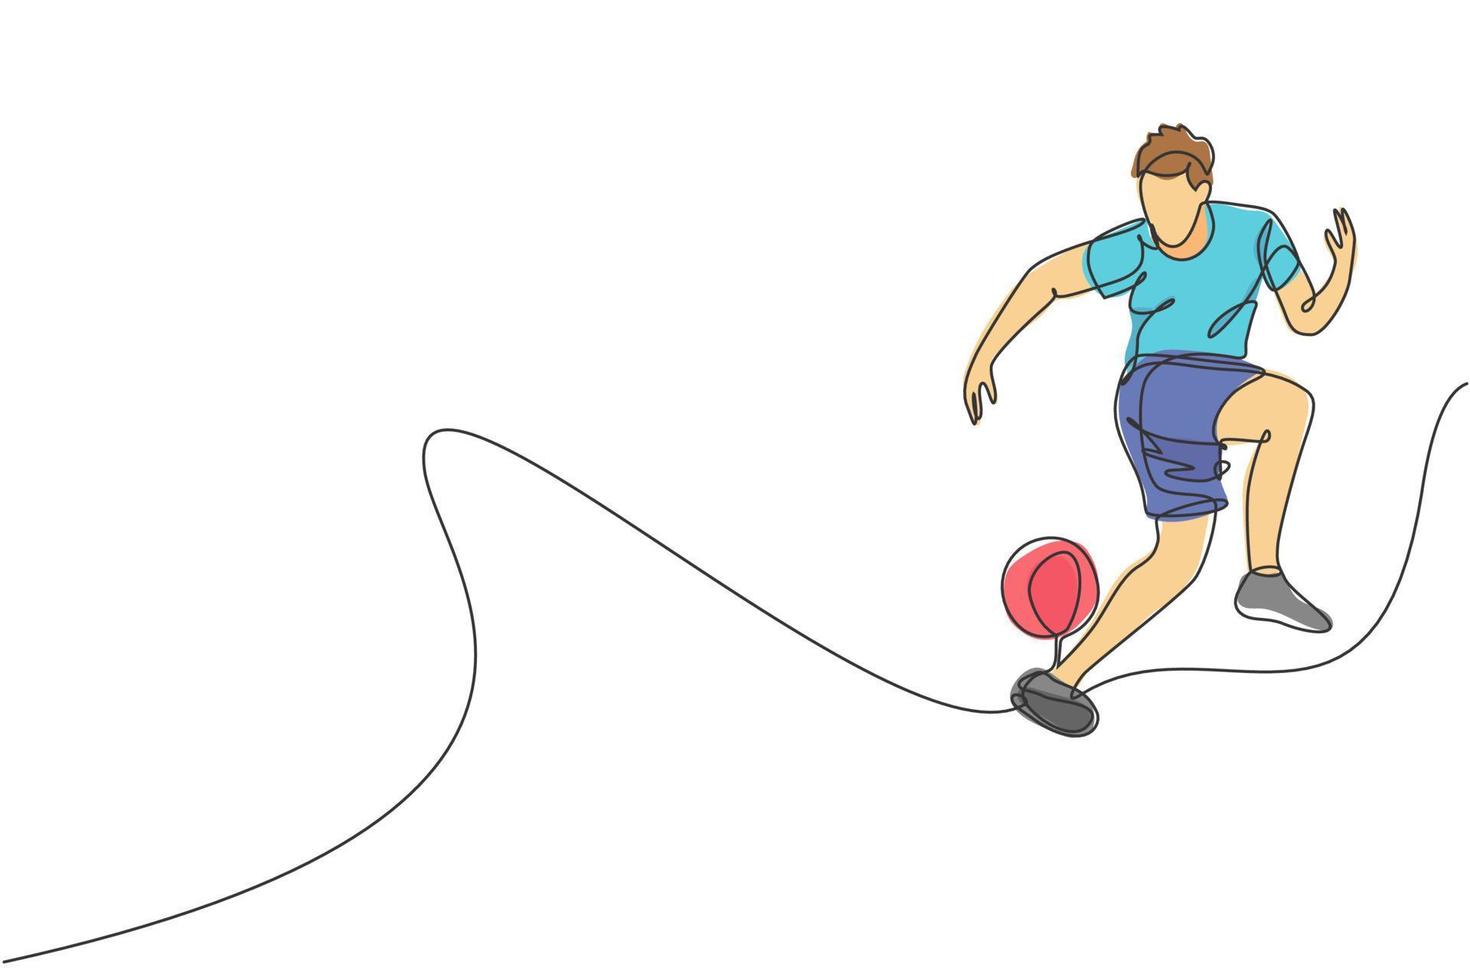 un dibujo de una sola línea de un joven que realiza fútbol de estilo libre, salta la pelota de malabarismo con el talón en la ilustración vectorial de la plaza de la ciudad. concepto de deporte de estilo libre de fútbol. diseño moderno de dibujo de línea continua vector